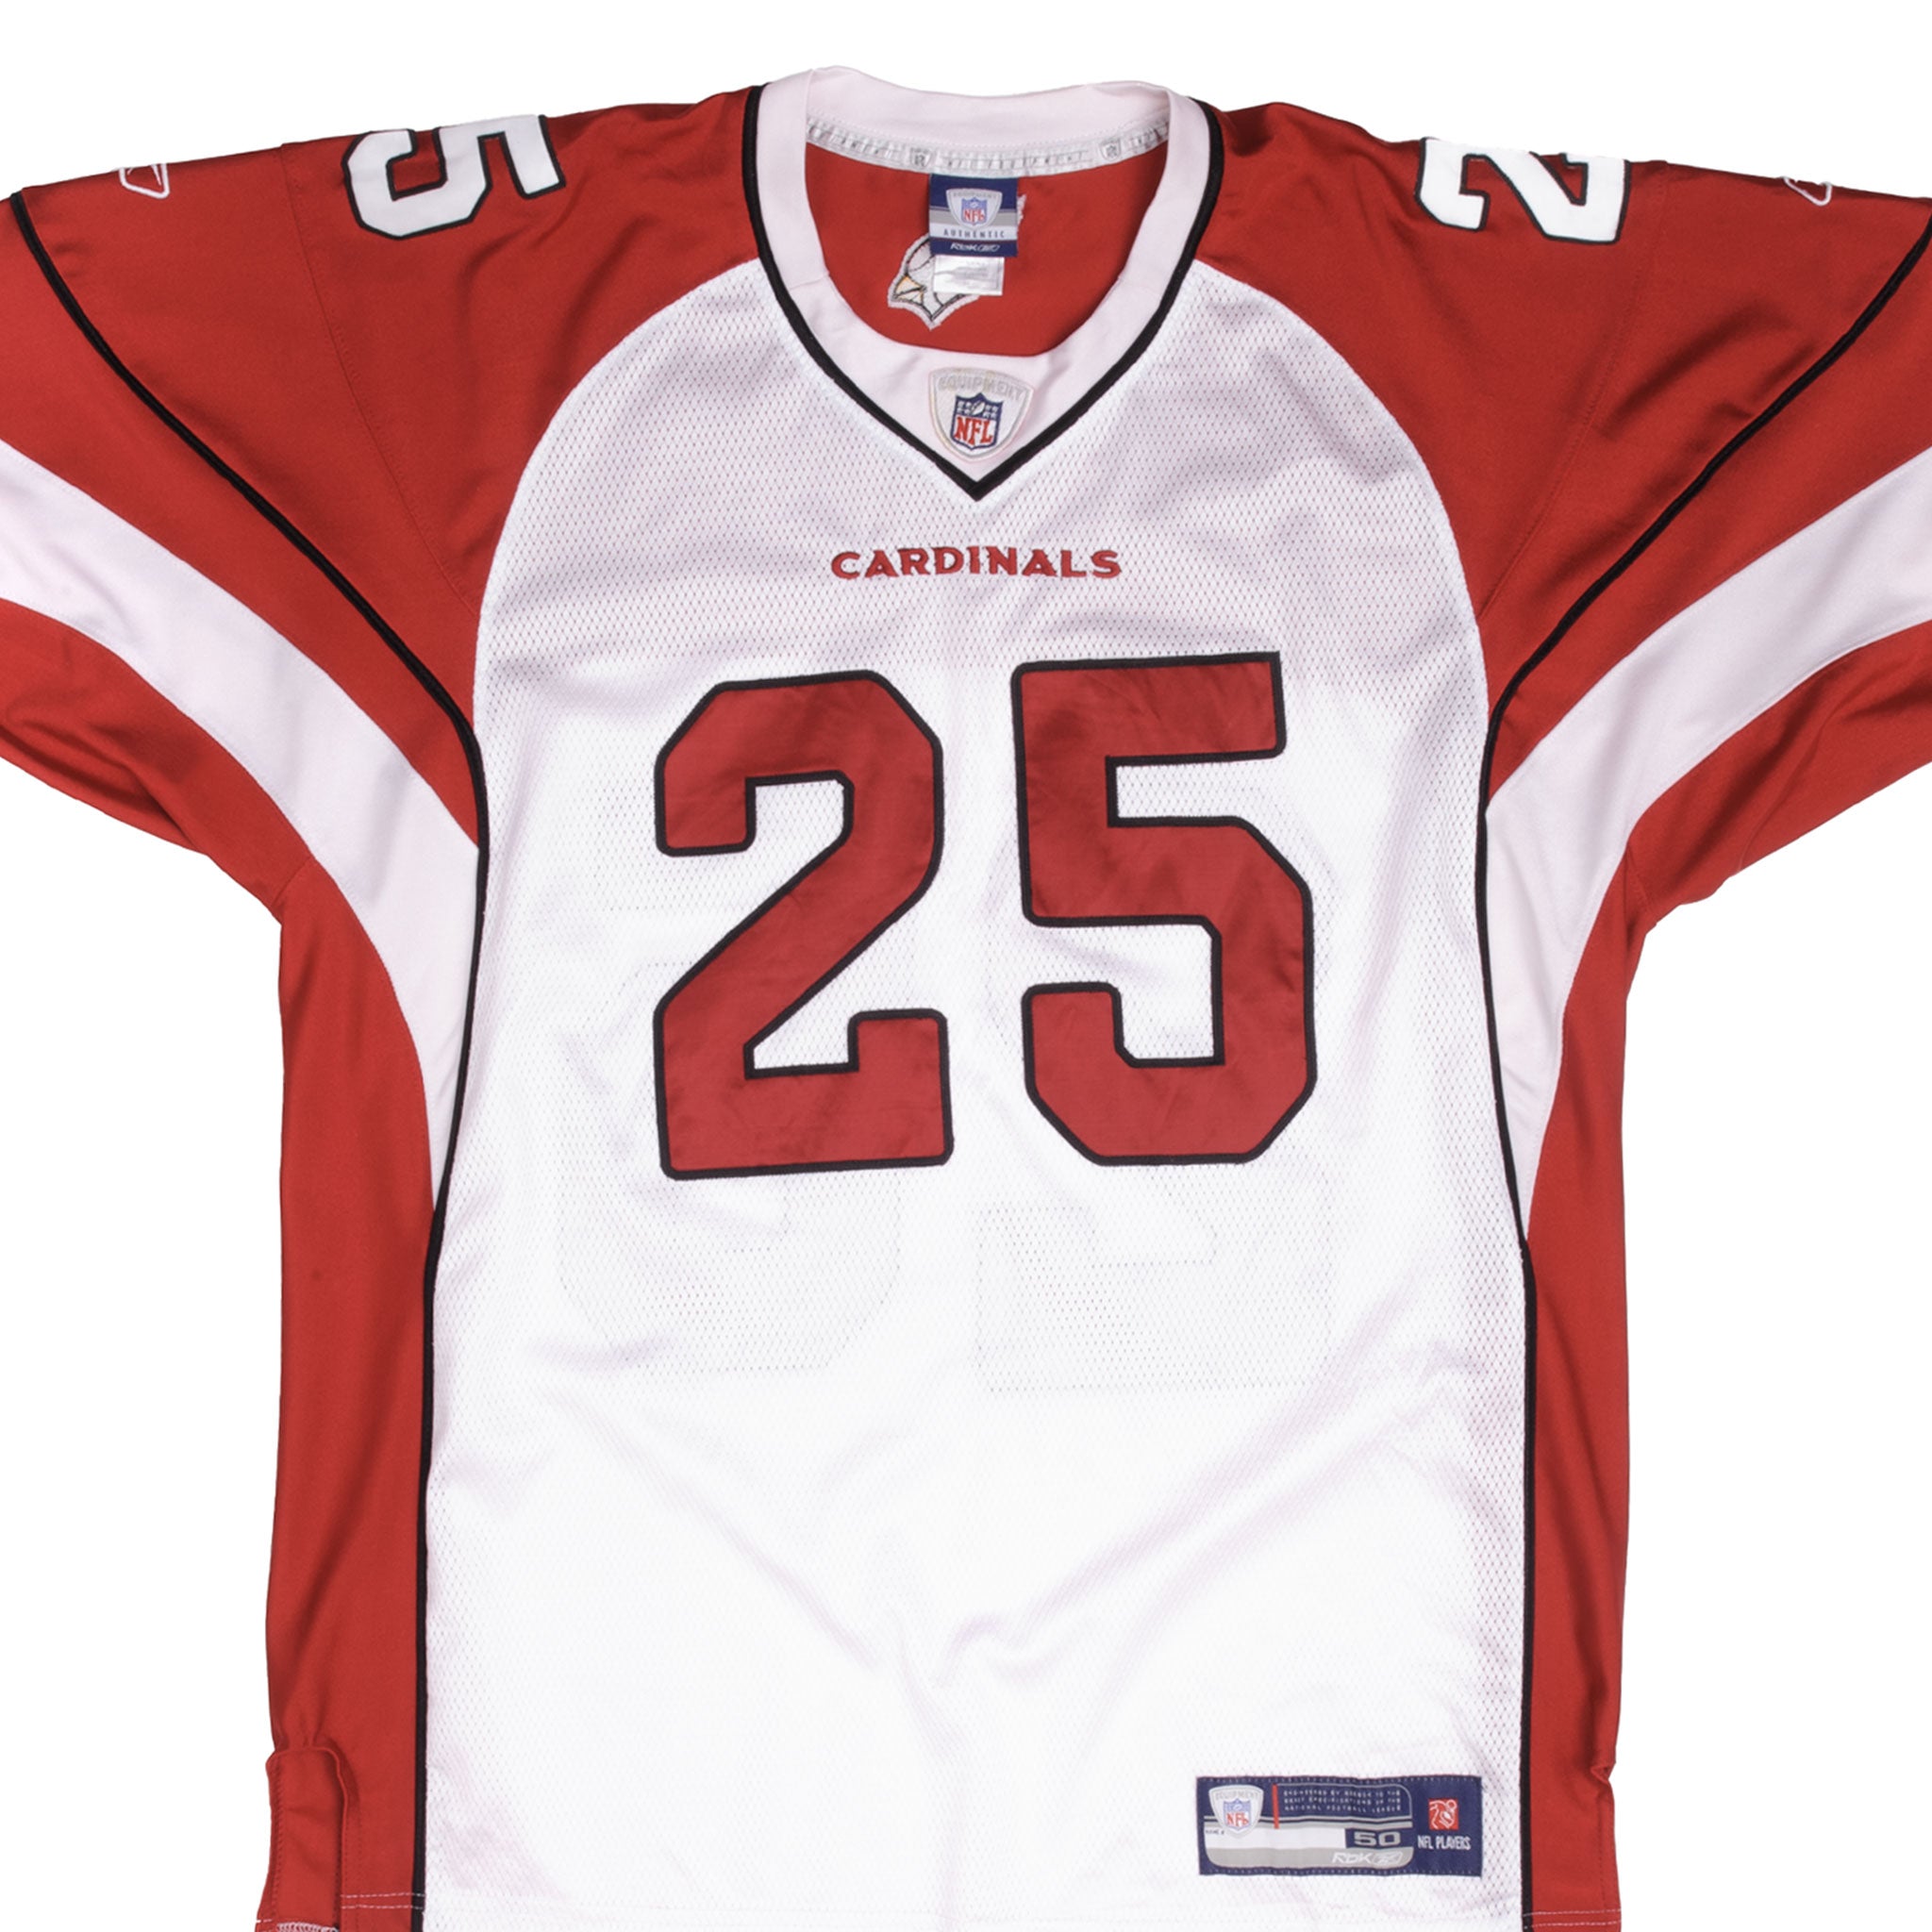 Sports / College Vintage NFL Philadelphia Eagles Jackson #10 Reebok Jersey 2000s Sze 52 Deadstock